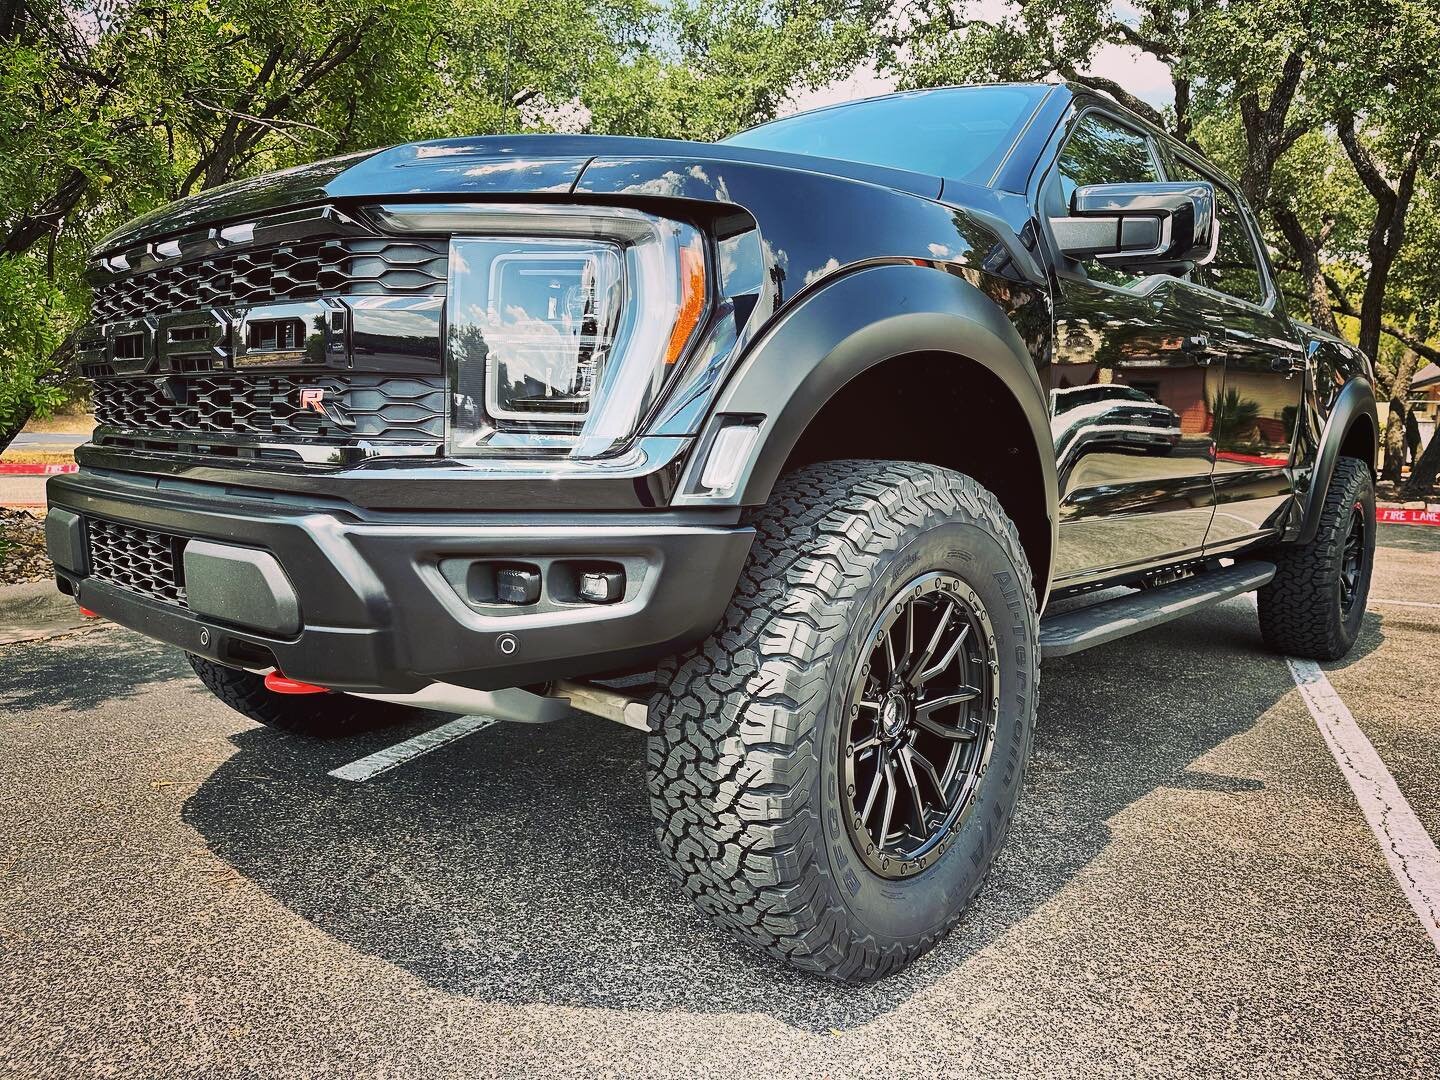 Ford Raptor R ... BFG tires, Readylift, Fuel wheels #truckaccessories #starcustoms #austintrucks #raptorr